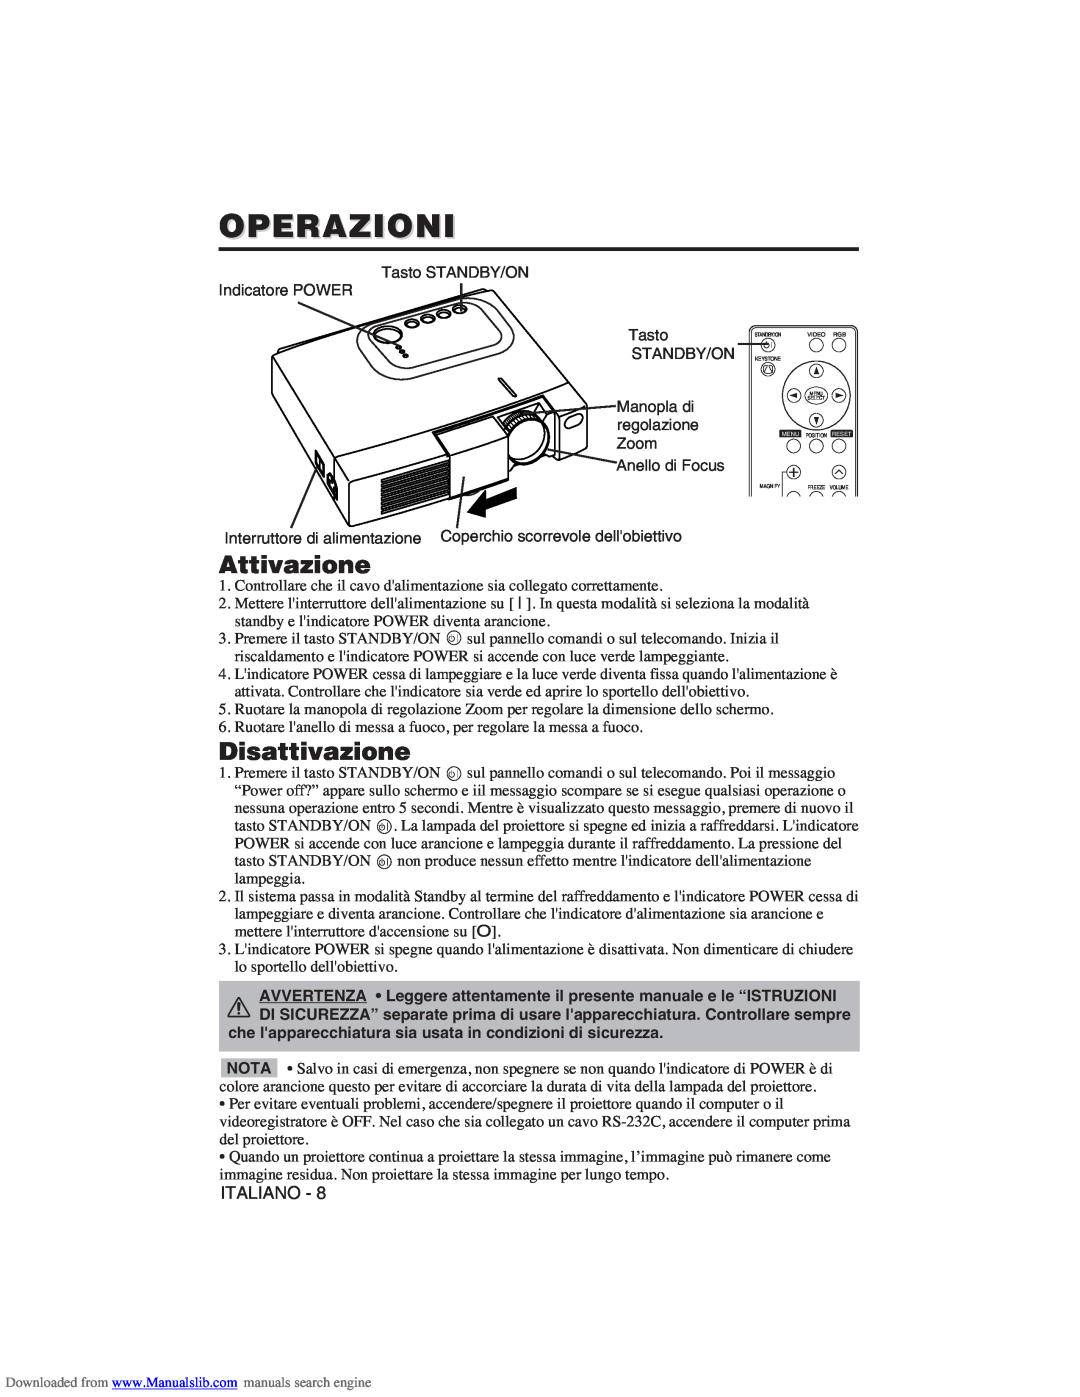 Hitachi CP-X275W user manual Operazioni, Attivazione, Disattivazione 